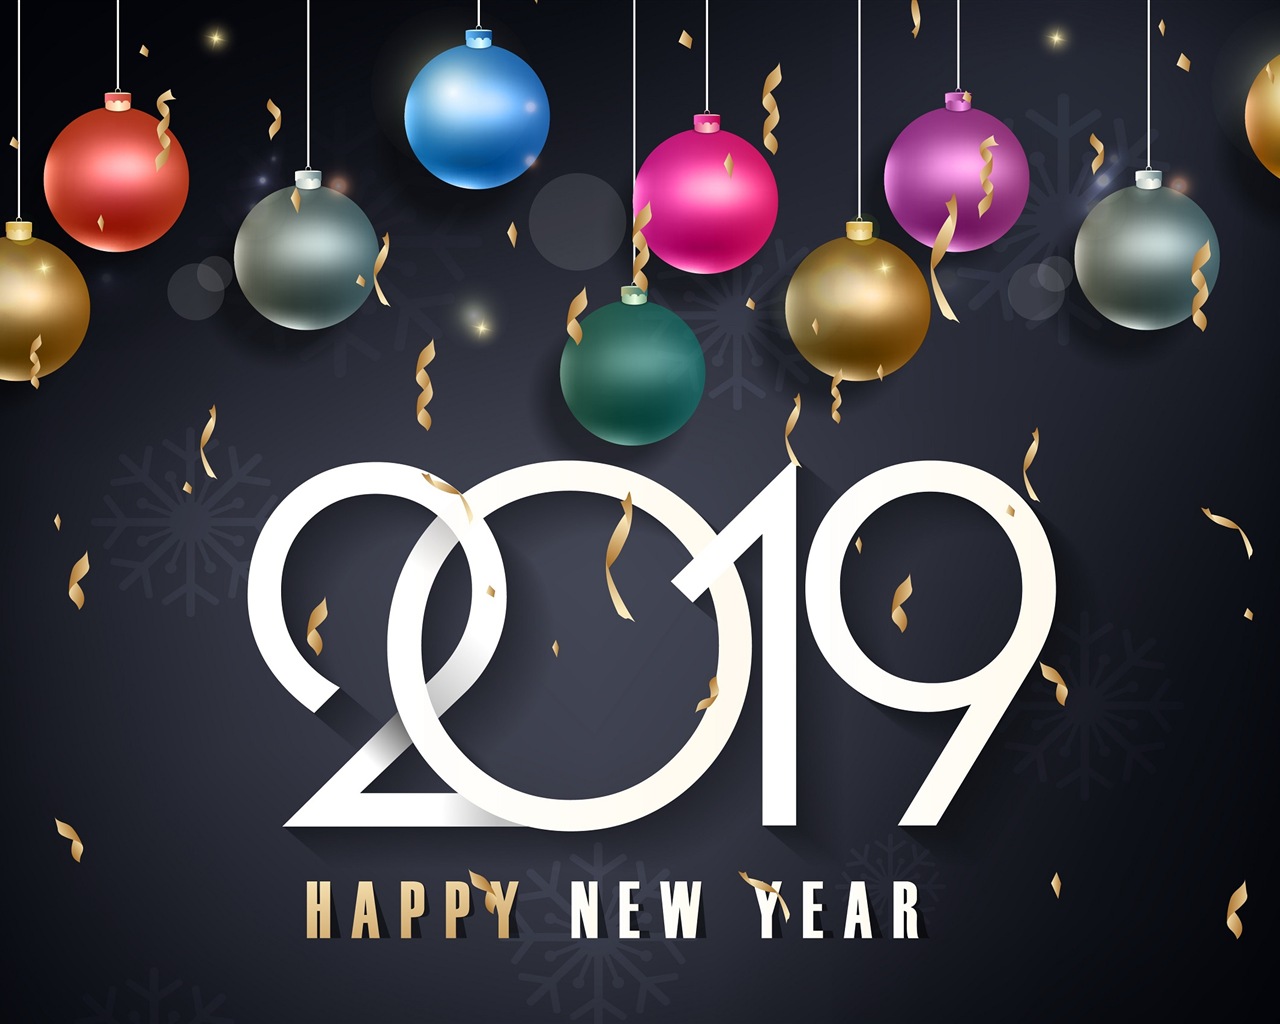 Feliz año nuevo 2019 HD wallpapers #9 - 1280x1024